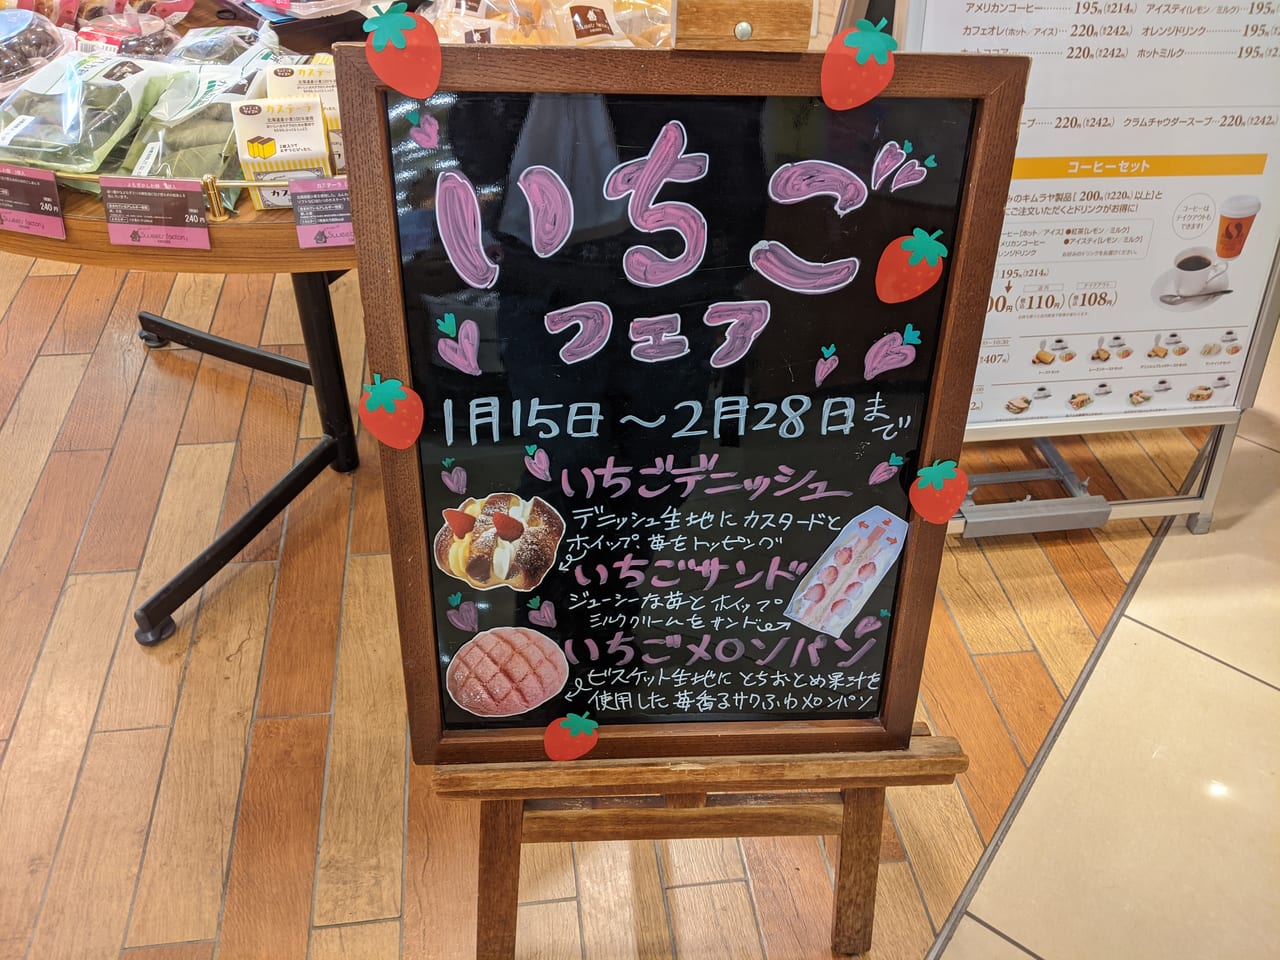 キムラヤ円山店いちごフェア